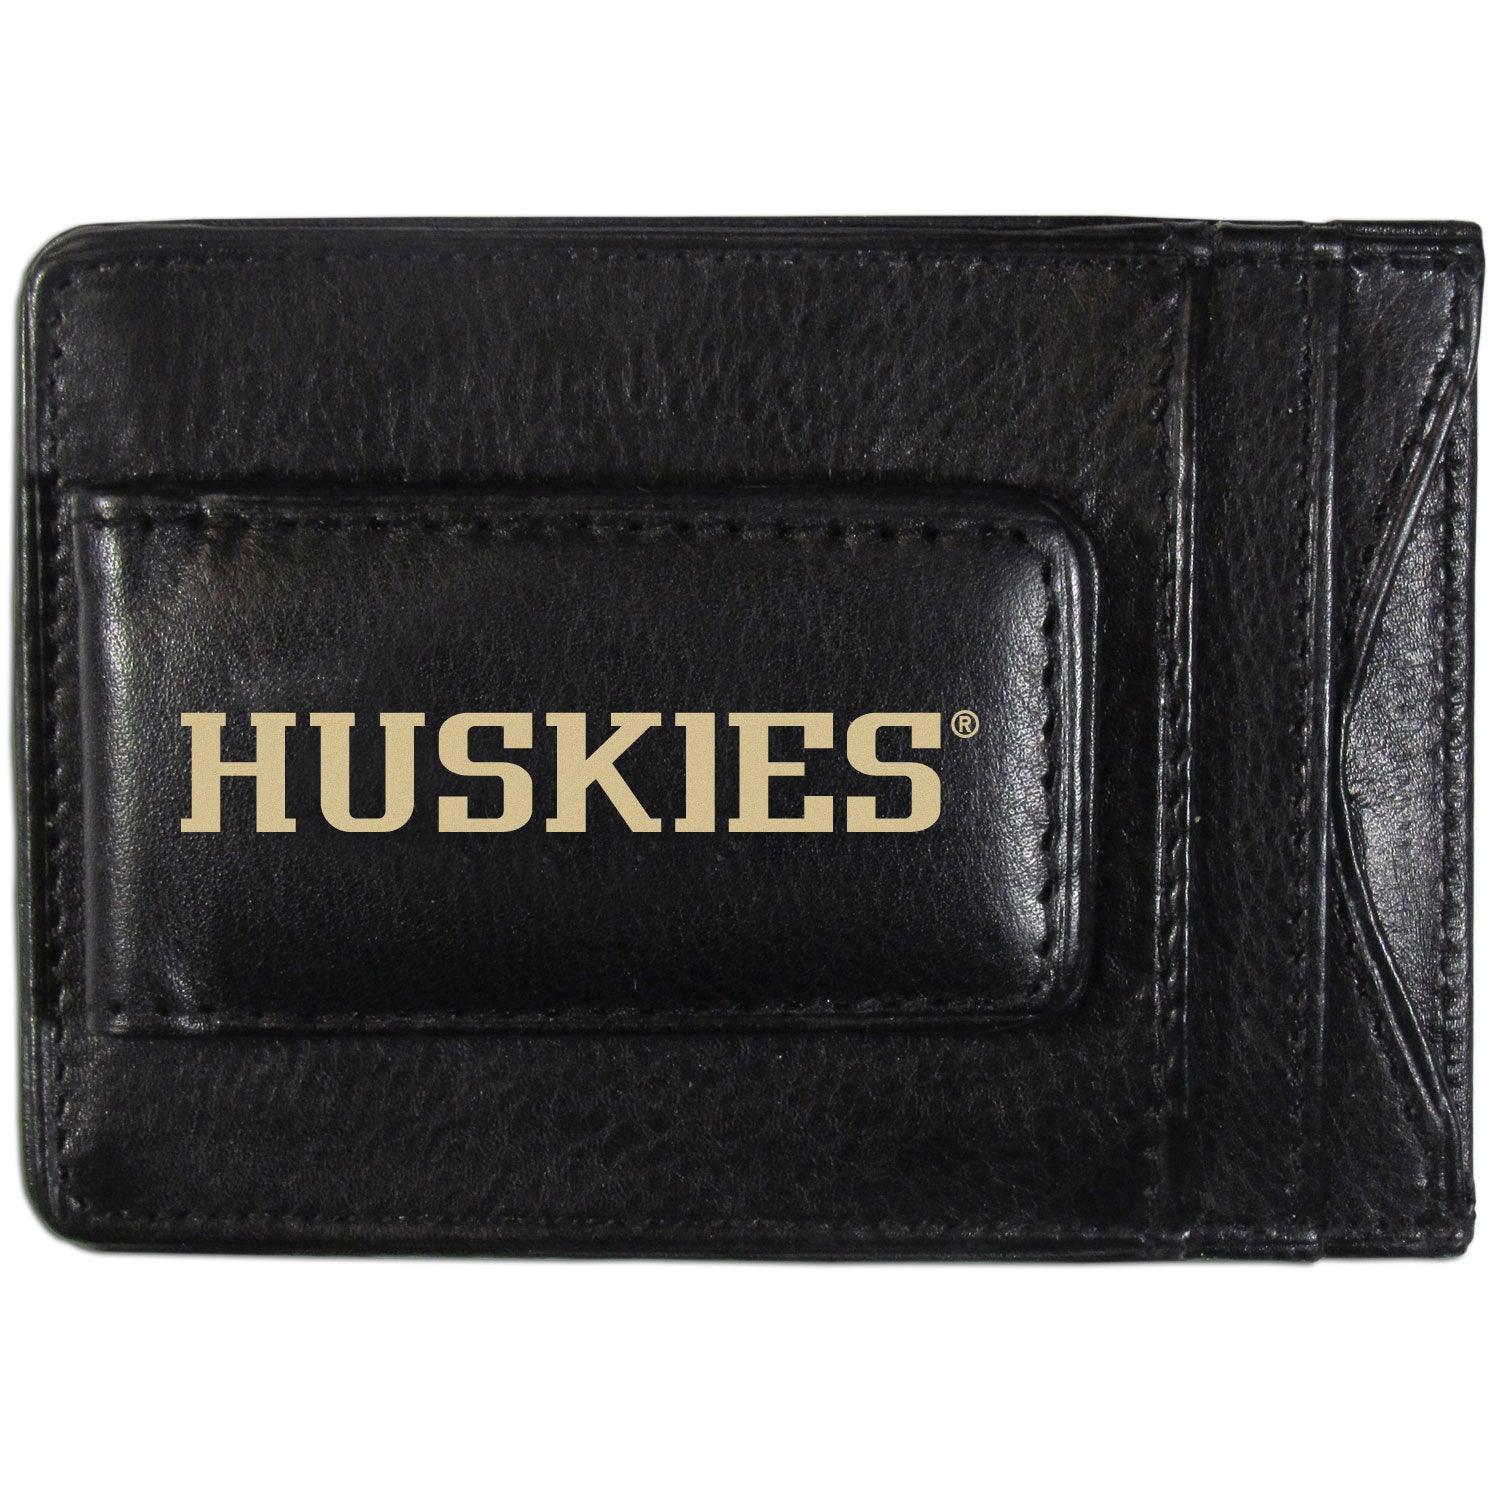 Washington Huskies Logo Leather Cash and Cardholder - Flyclothing LLC